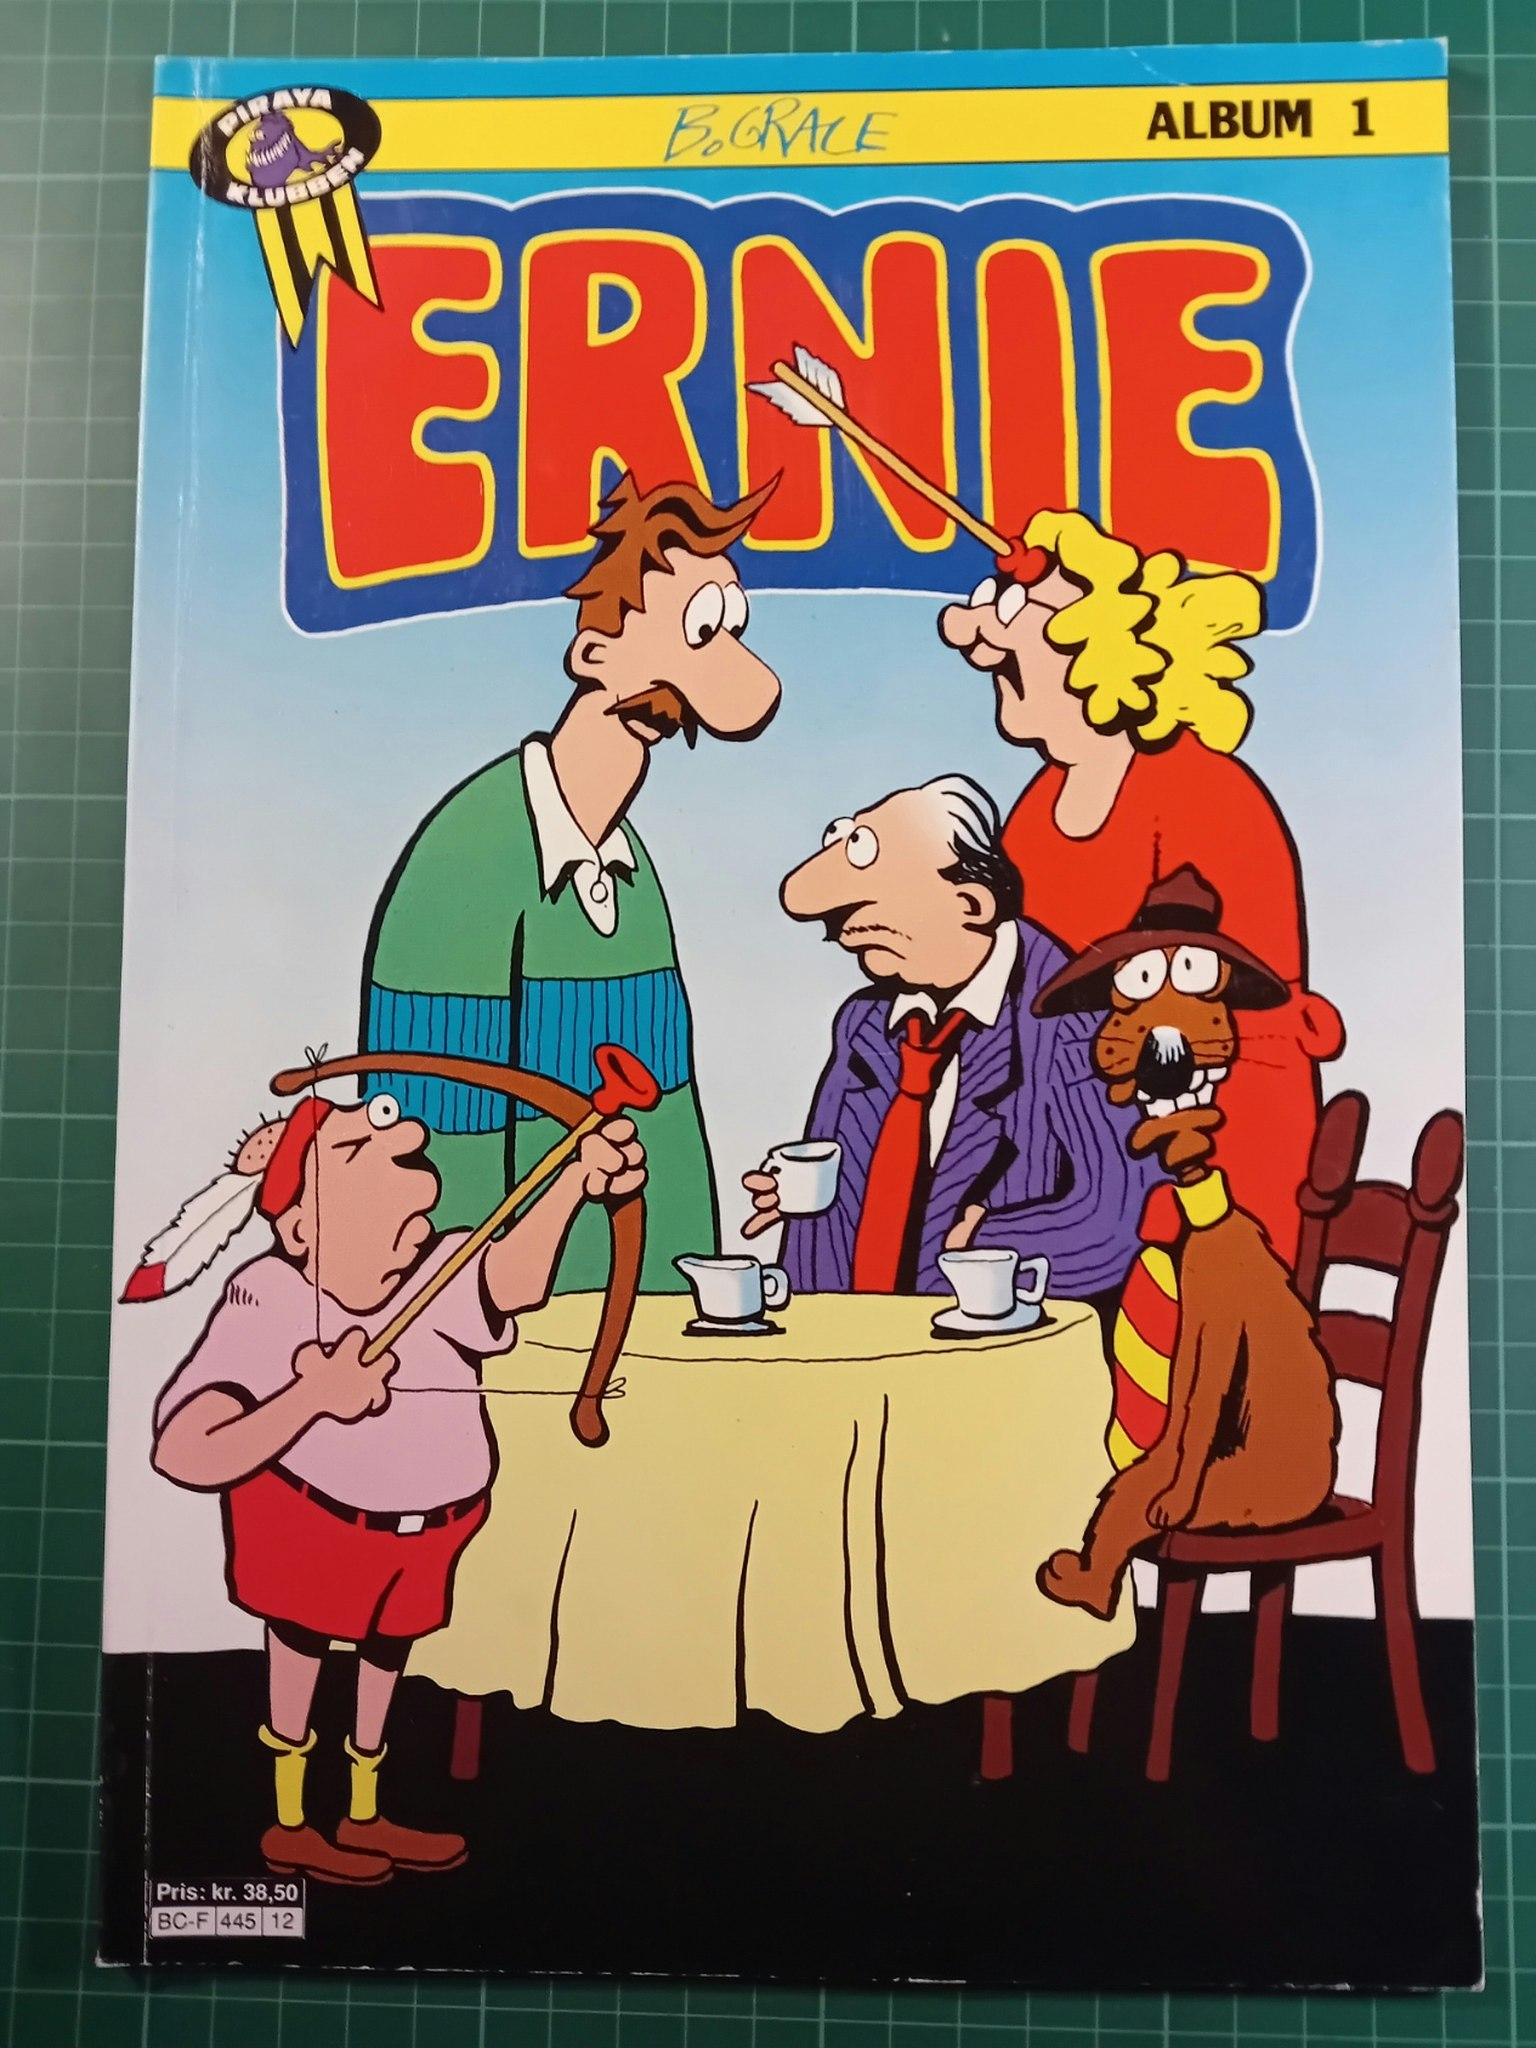 Ernie album 1